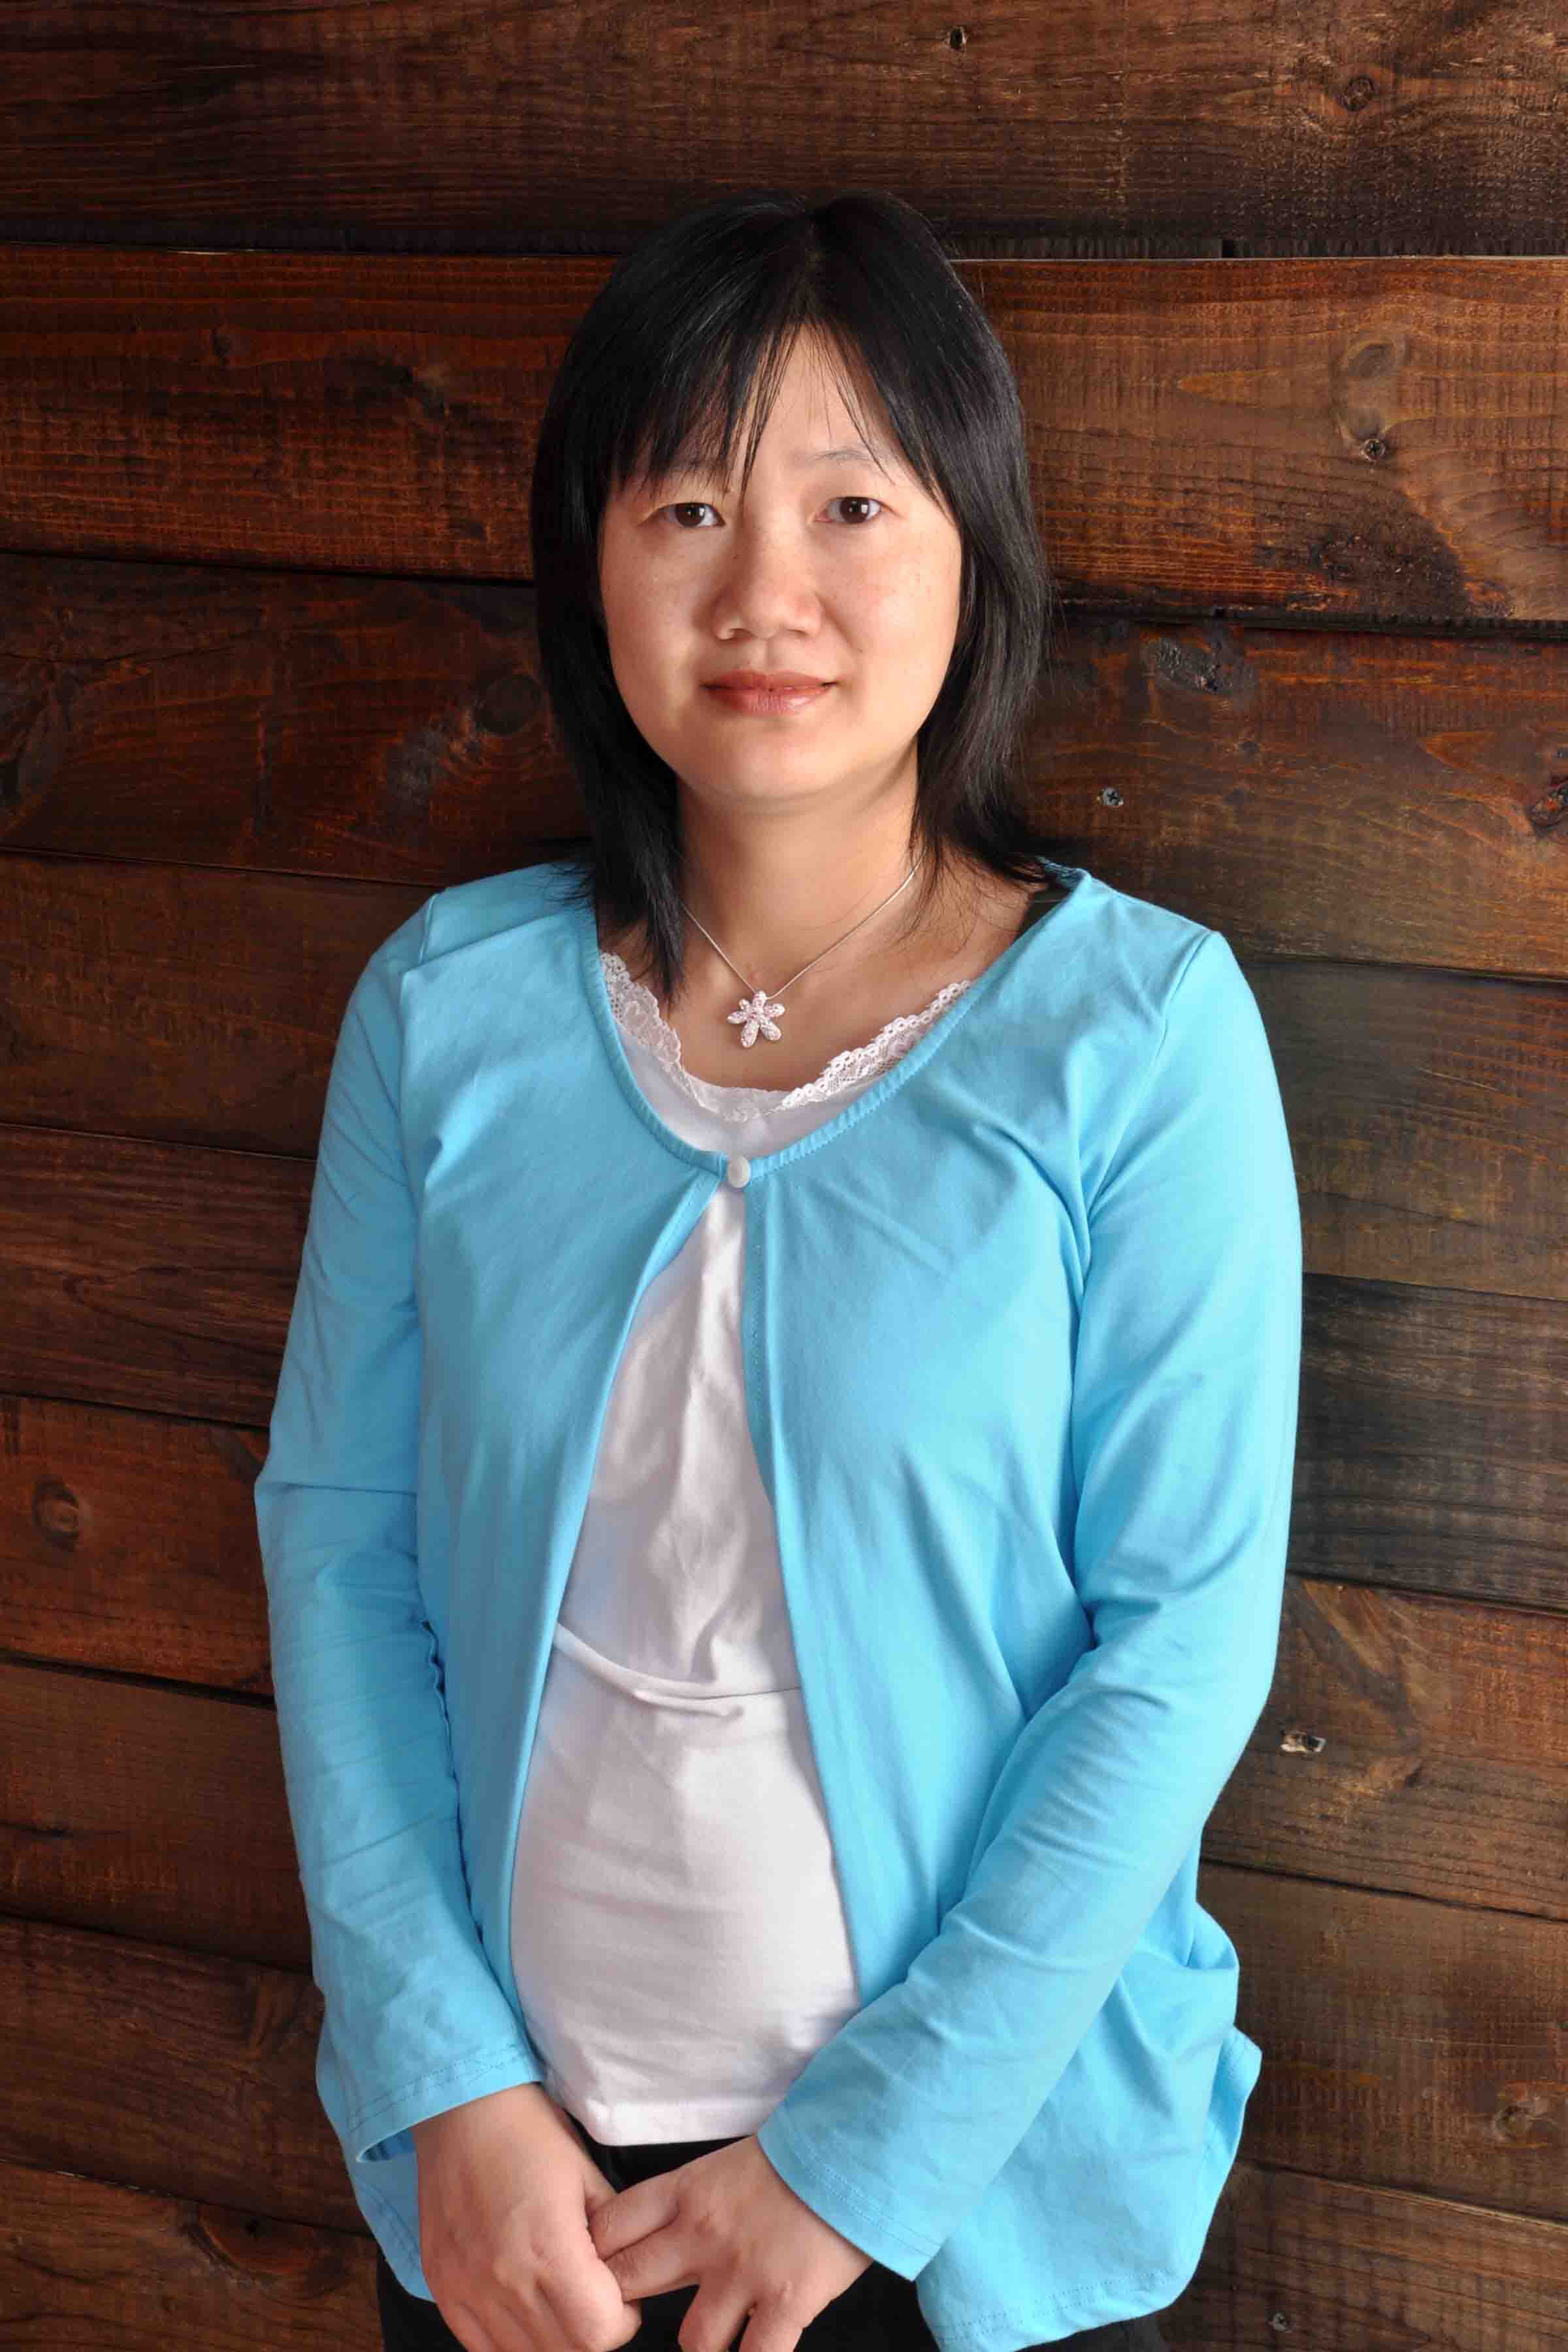 Xiaowen Liu, PhD